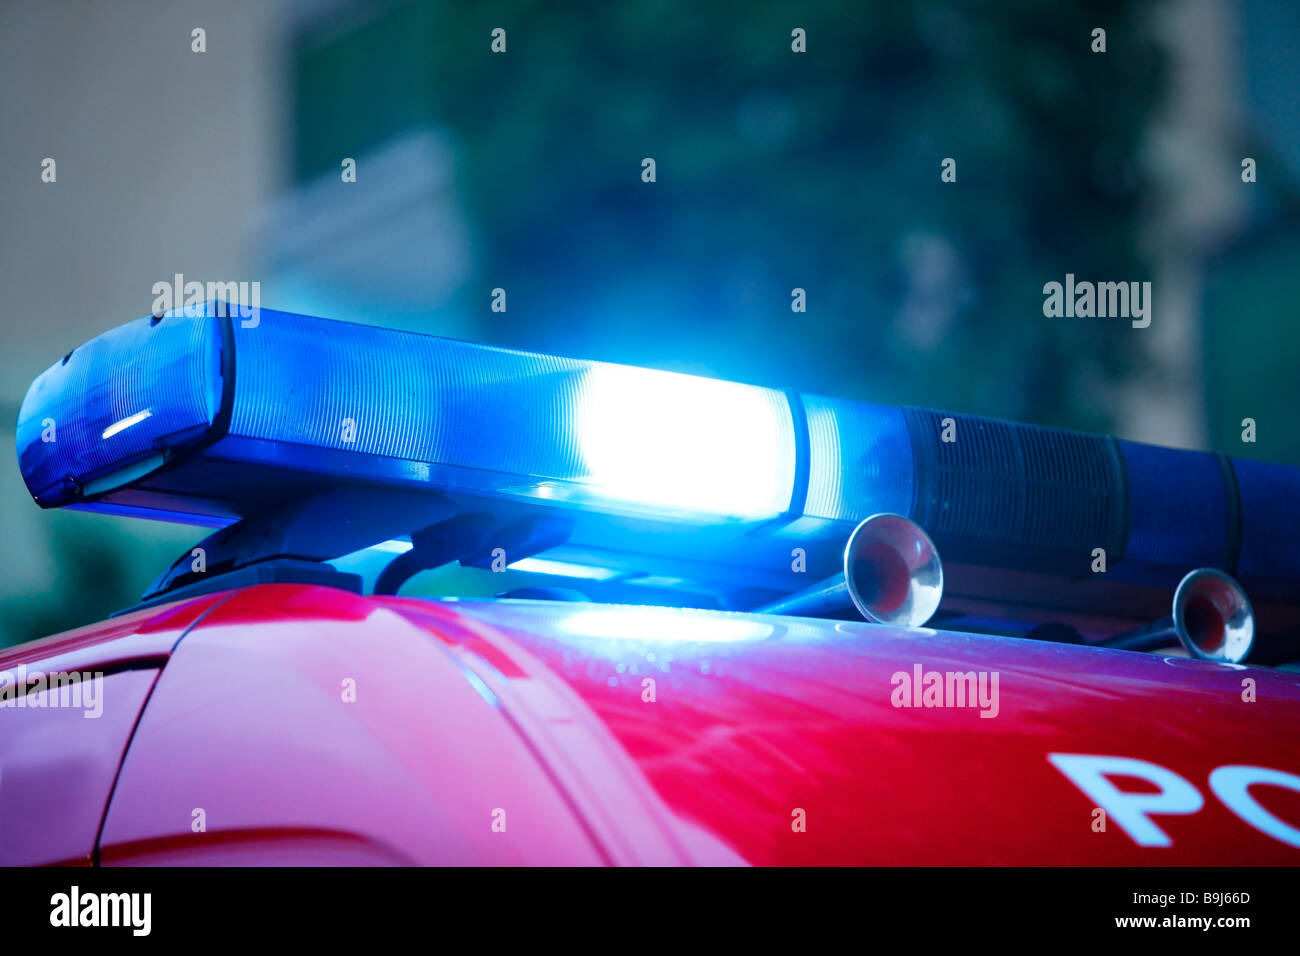 Sirena della polizia immagini e fotografie stock ad alta risoluzione - Alamy